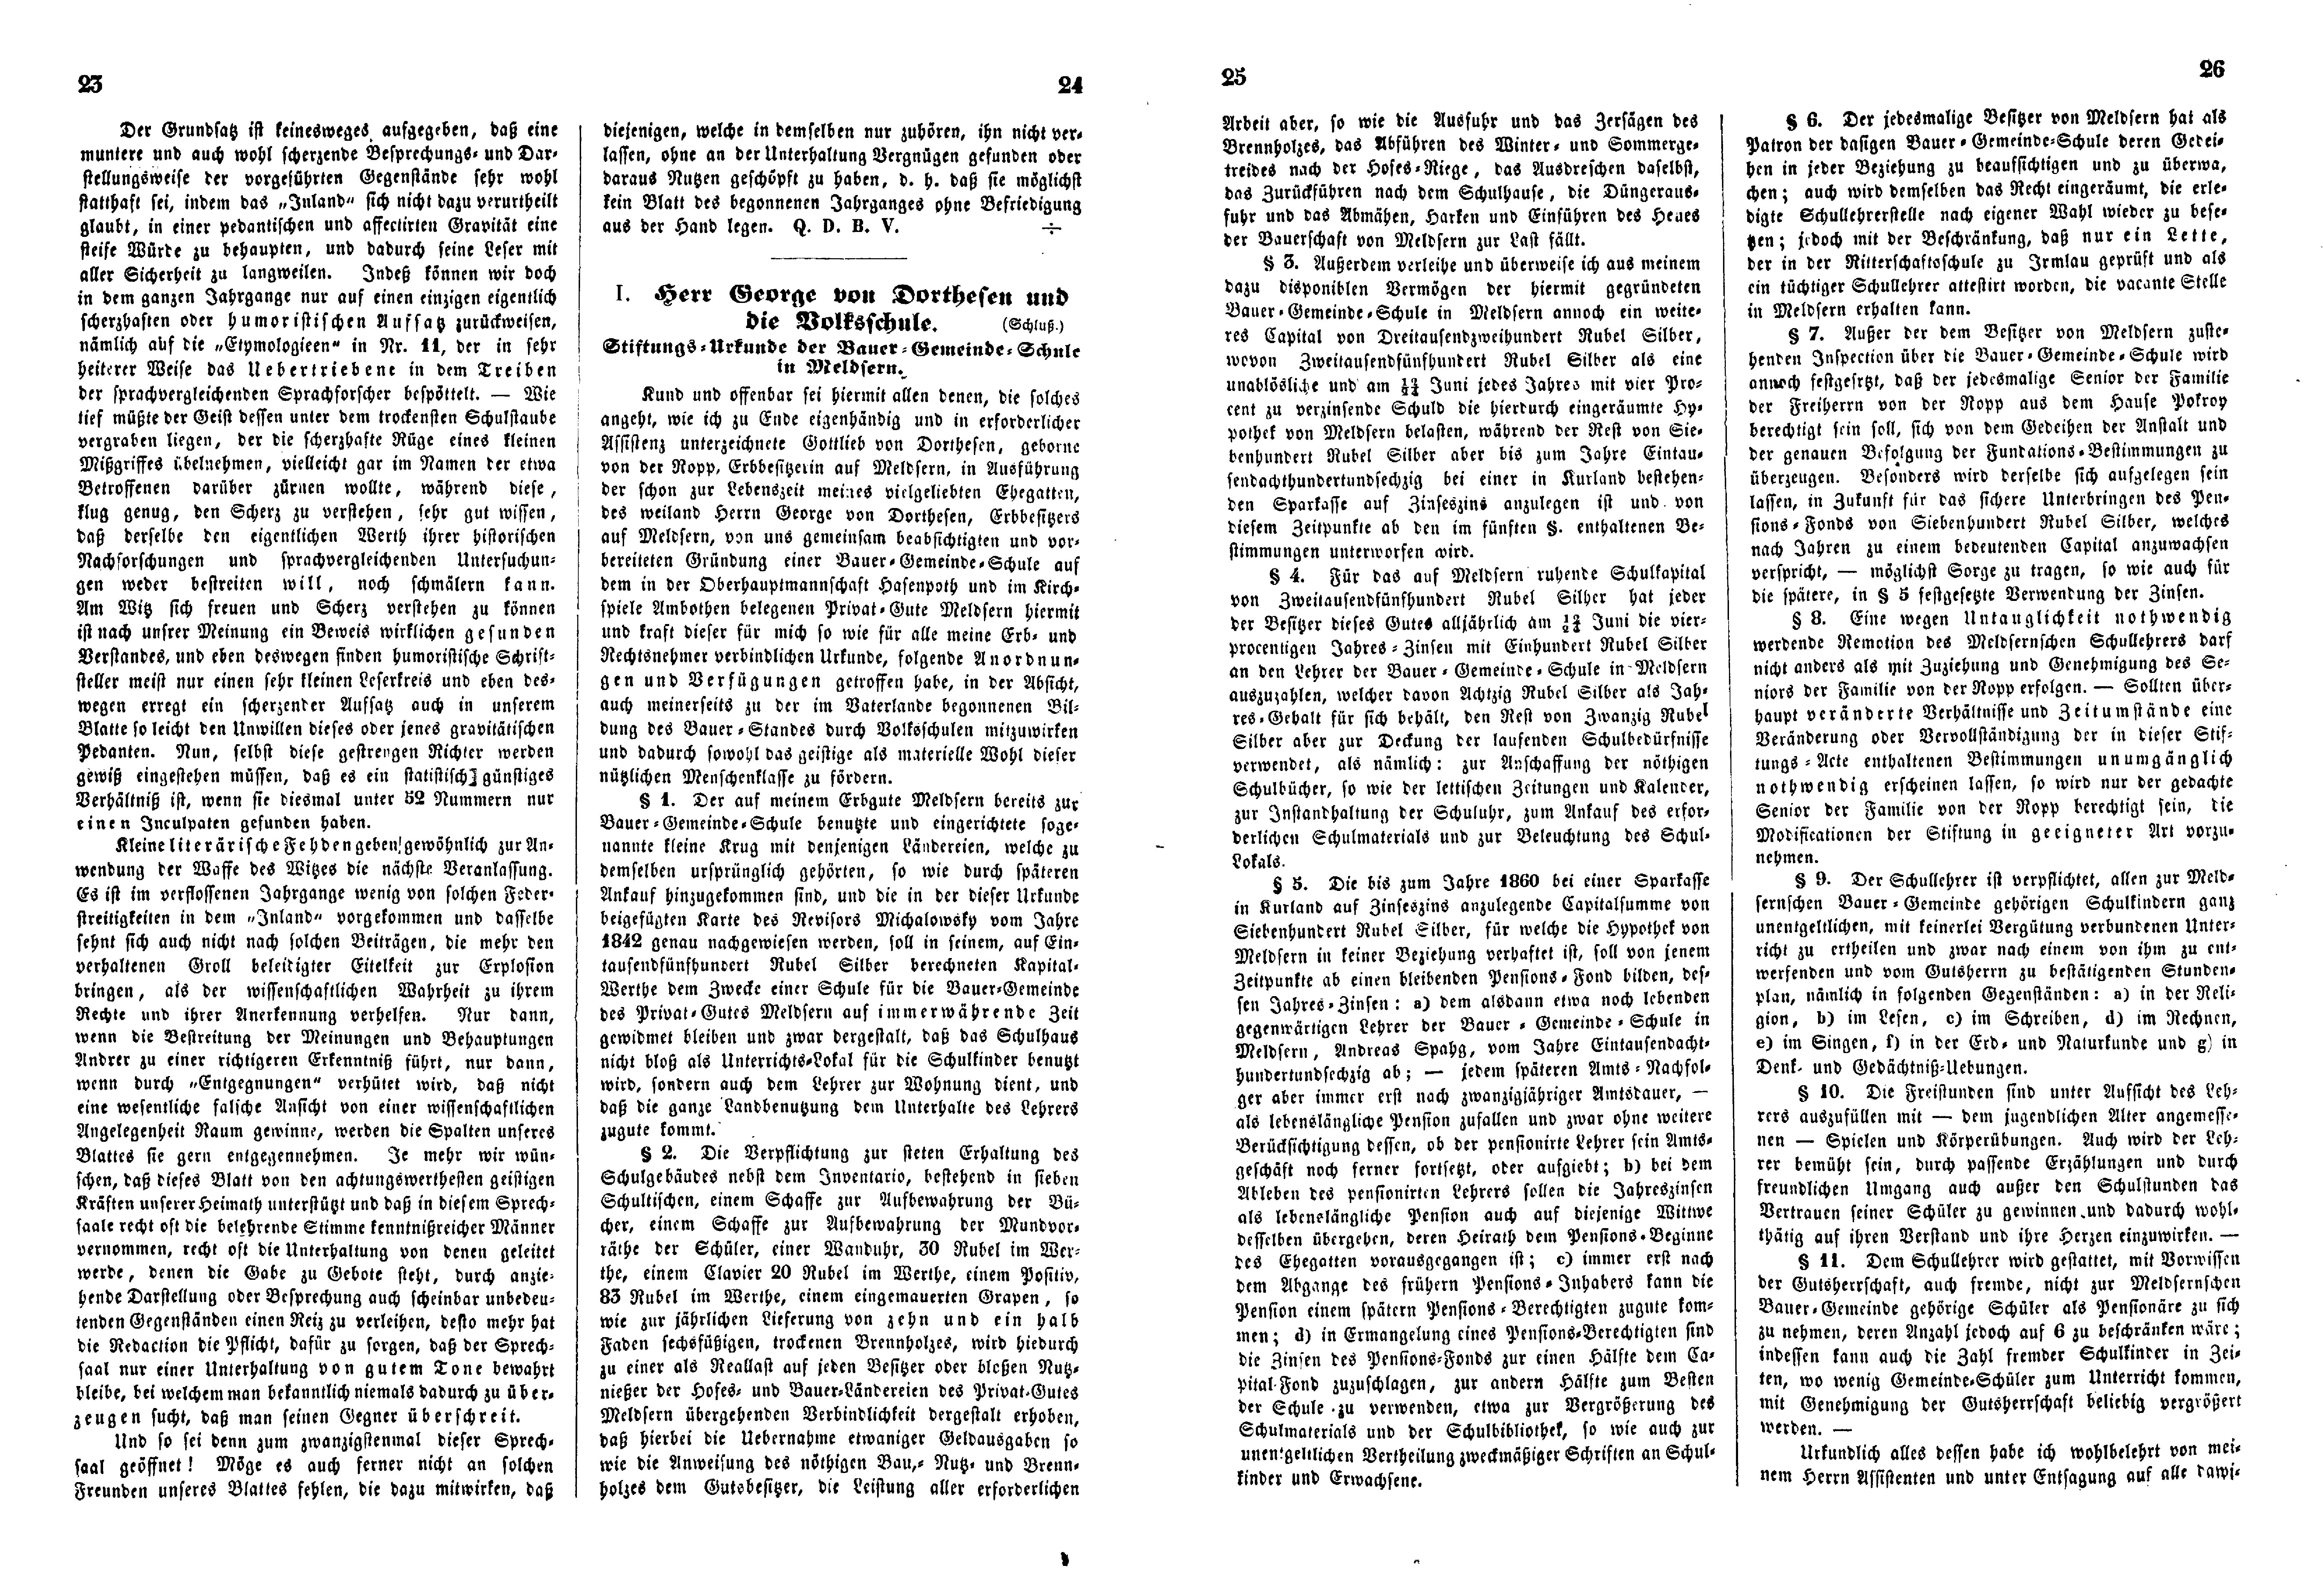 Das Inland [20] (1855) | 14. (23-26) Основной текст